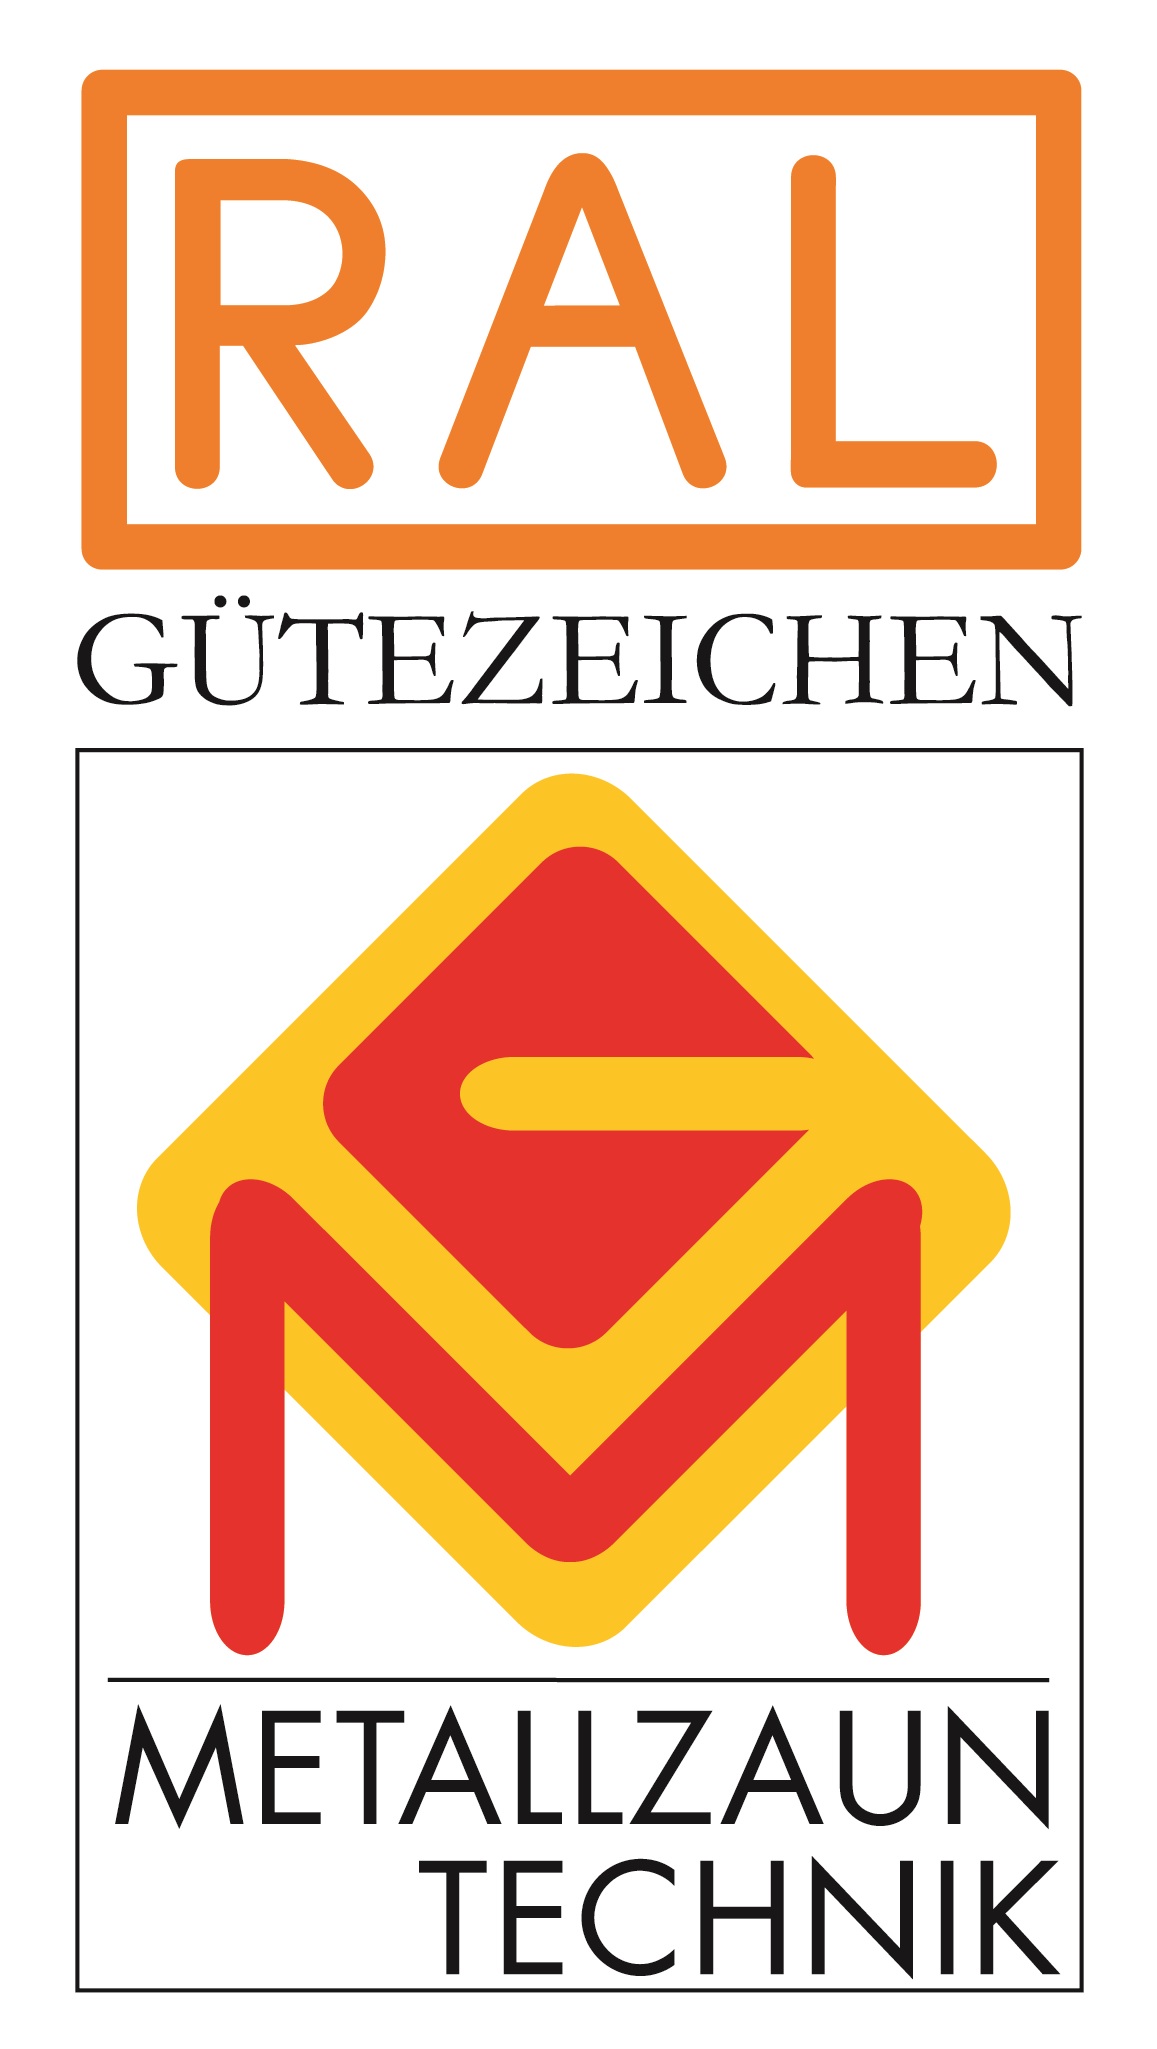 LogoLogo Metallzauntechnik